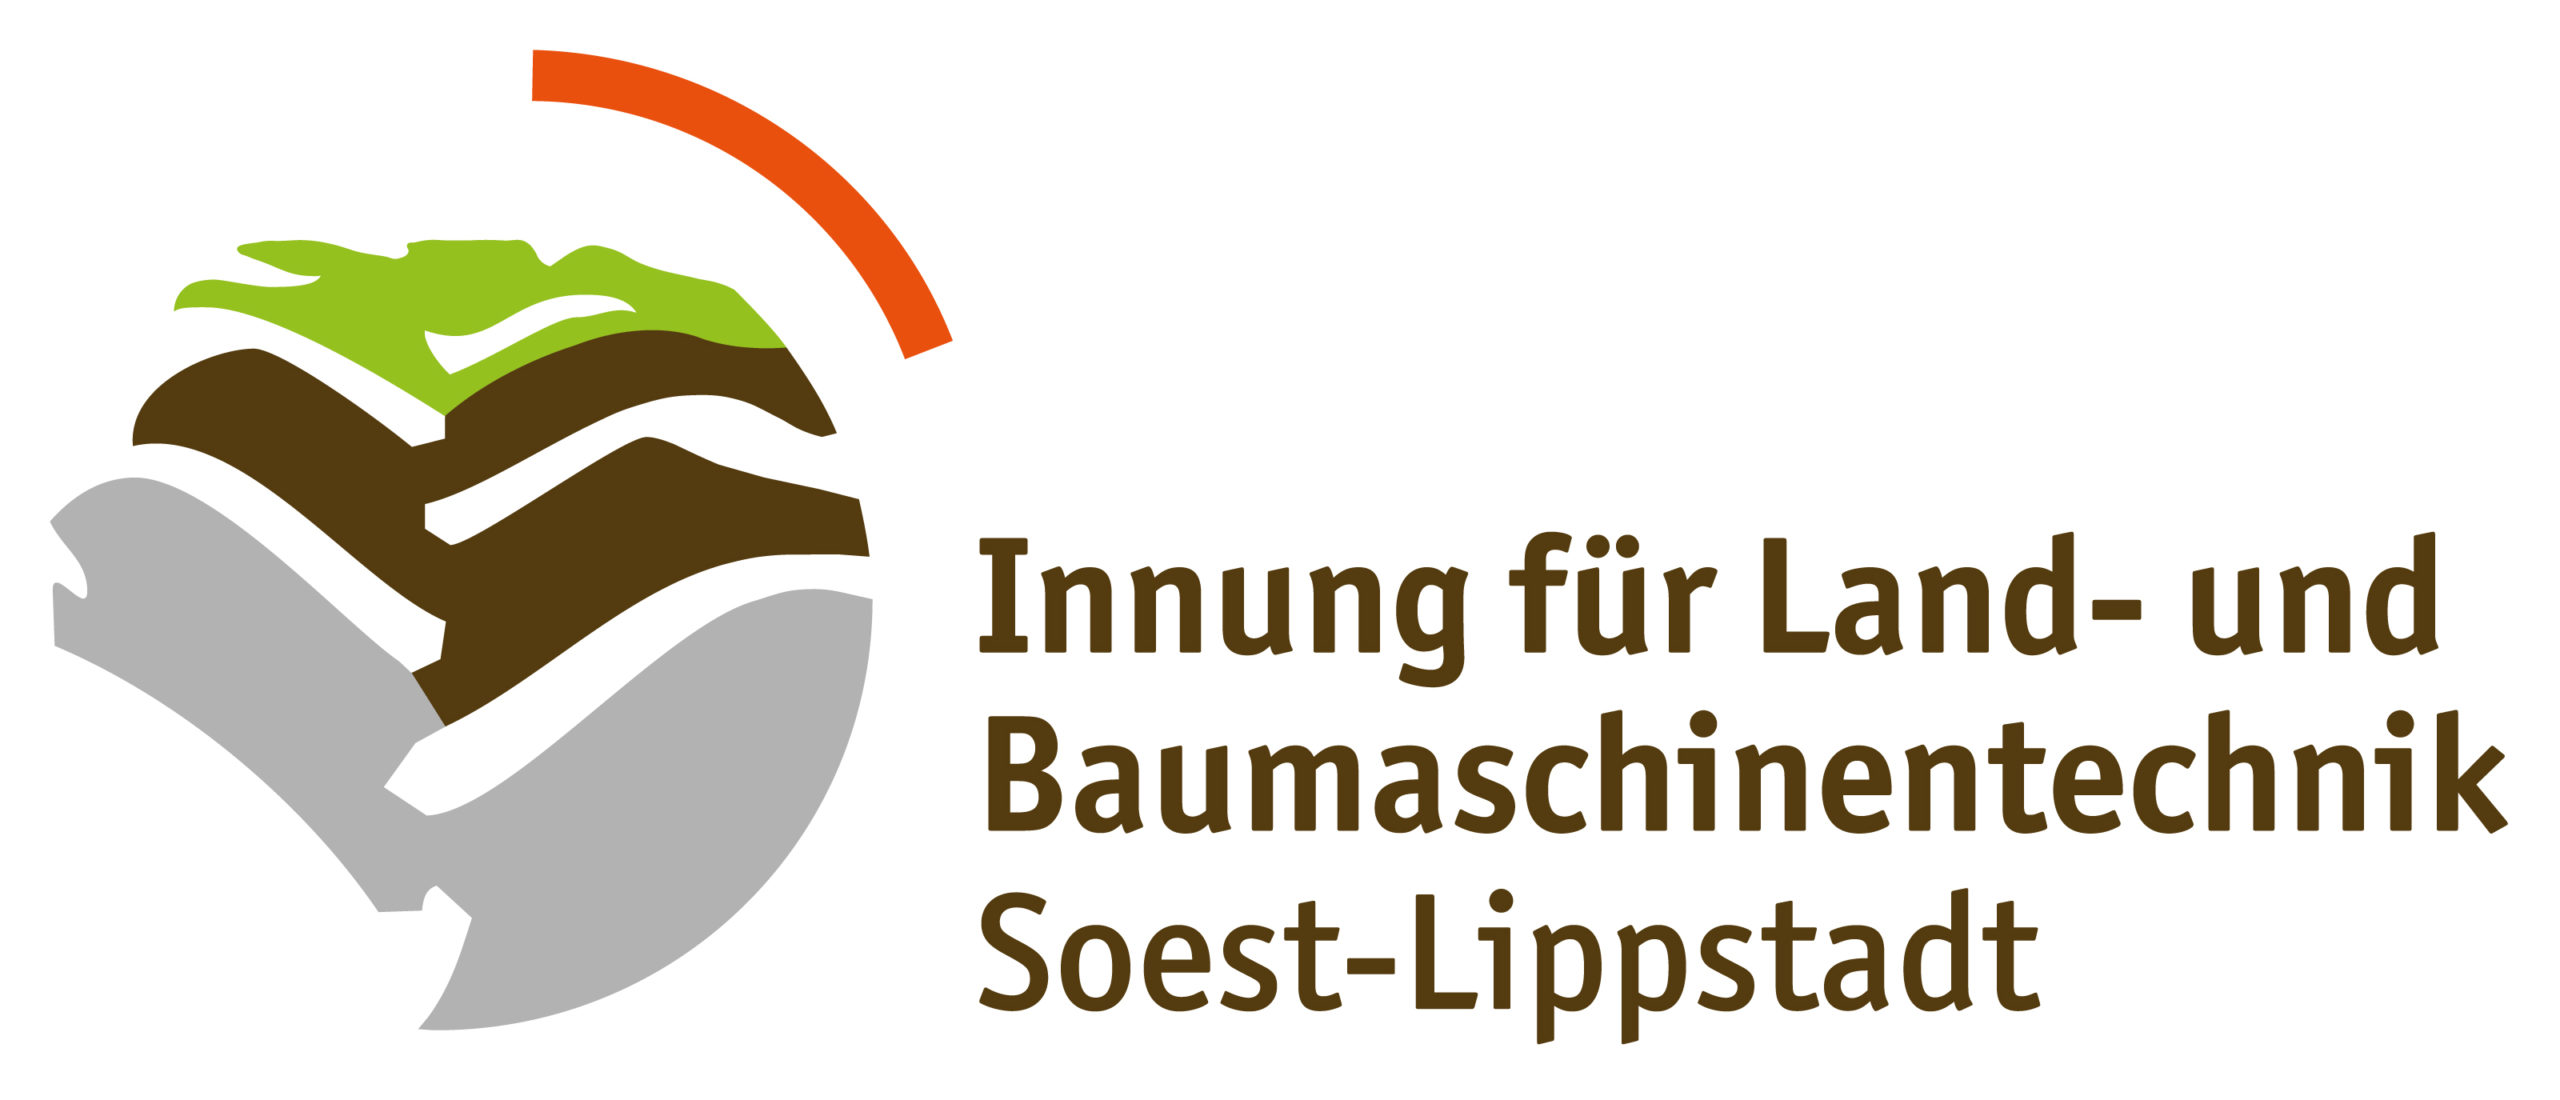 Innung für Land- und Baumaschinentechnik Soest-Lippstadt